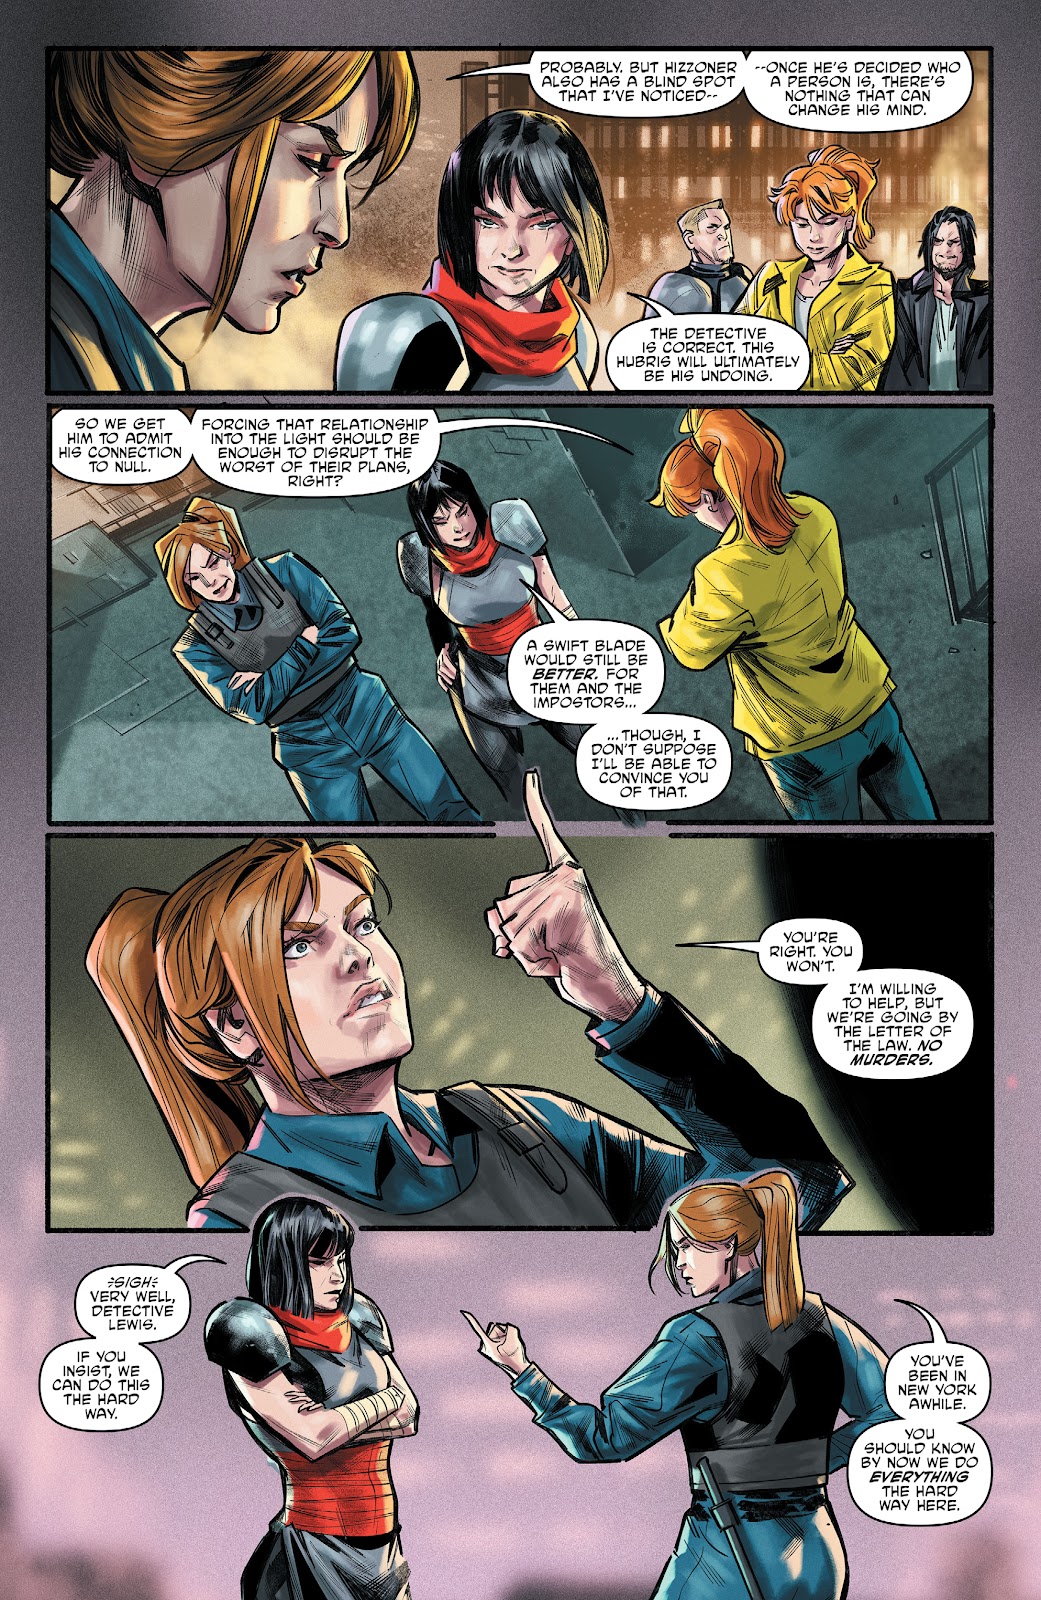 Teenage Mutant Ninja Turtles: The Armageddon Game - The Alliance issue 6 - Page 5